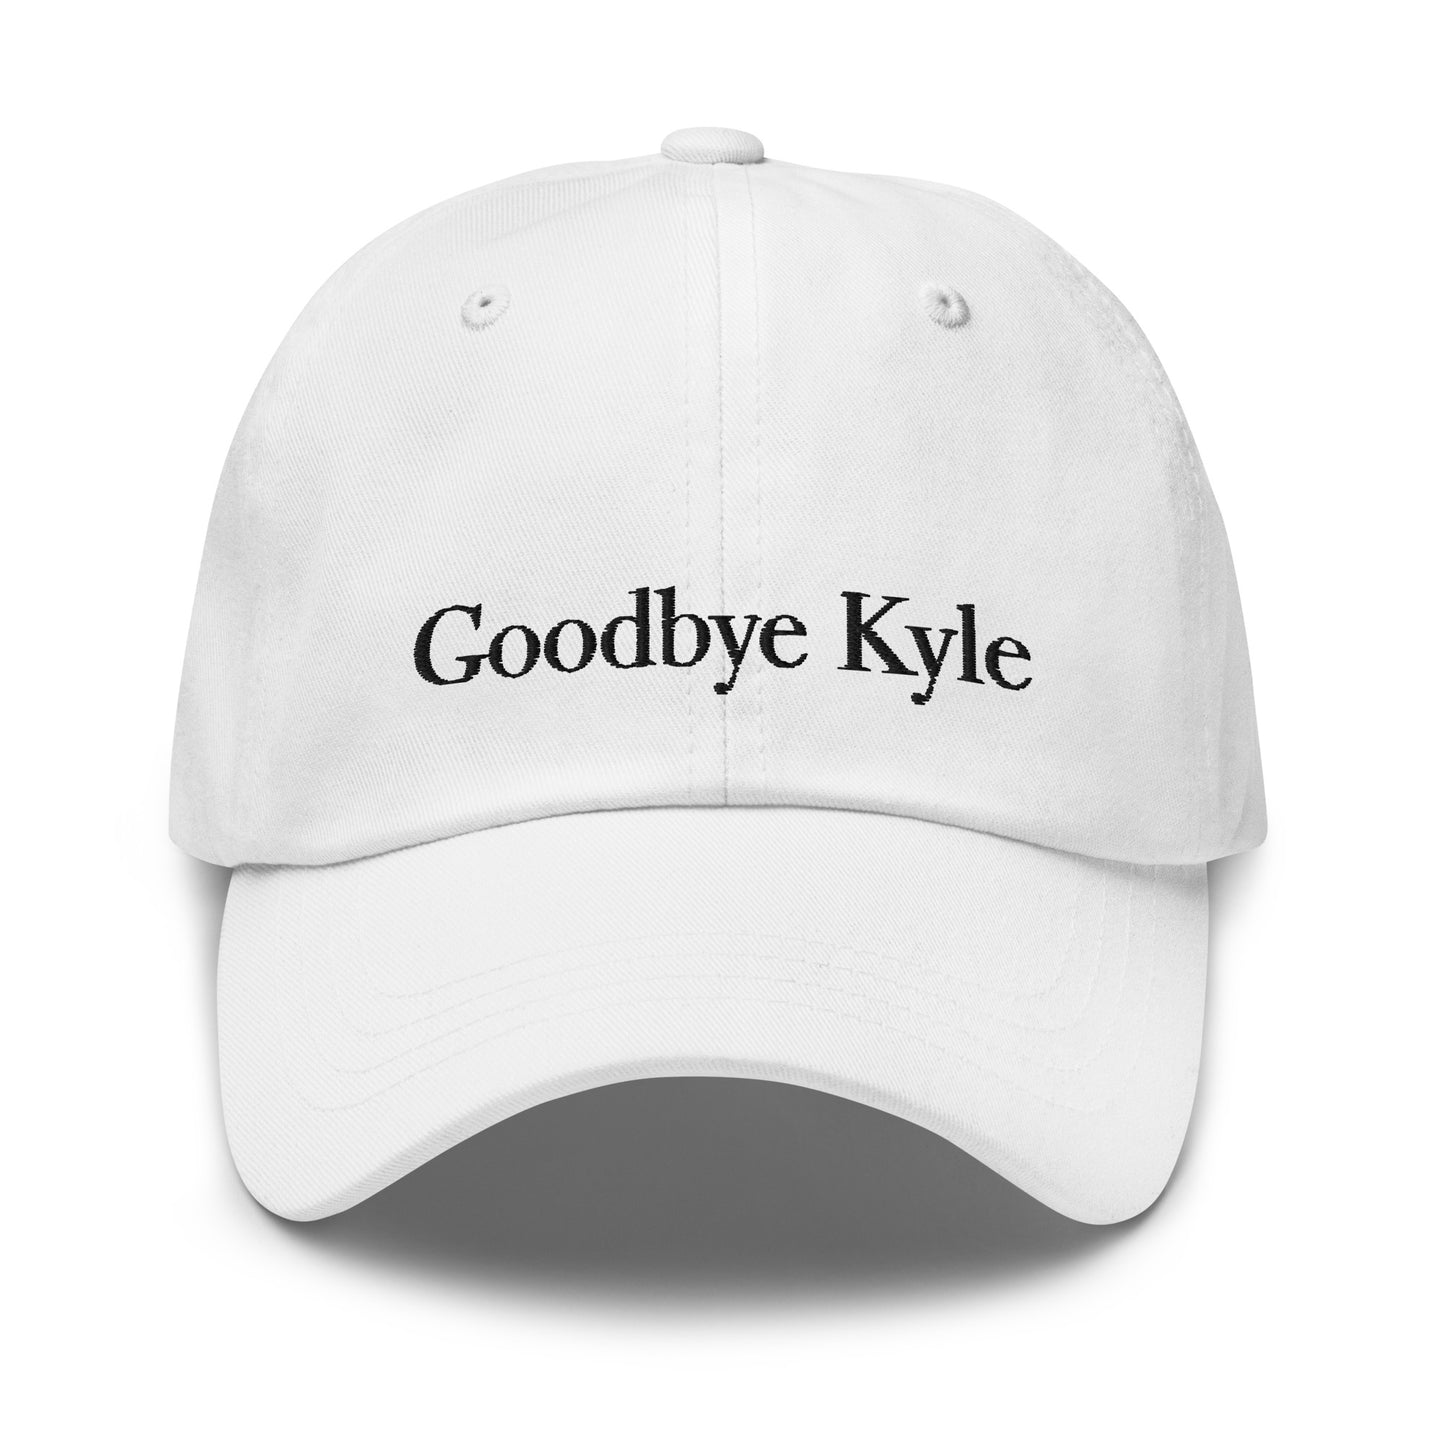 Kyle Hat